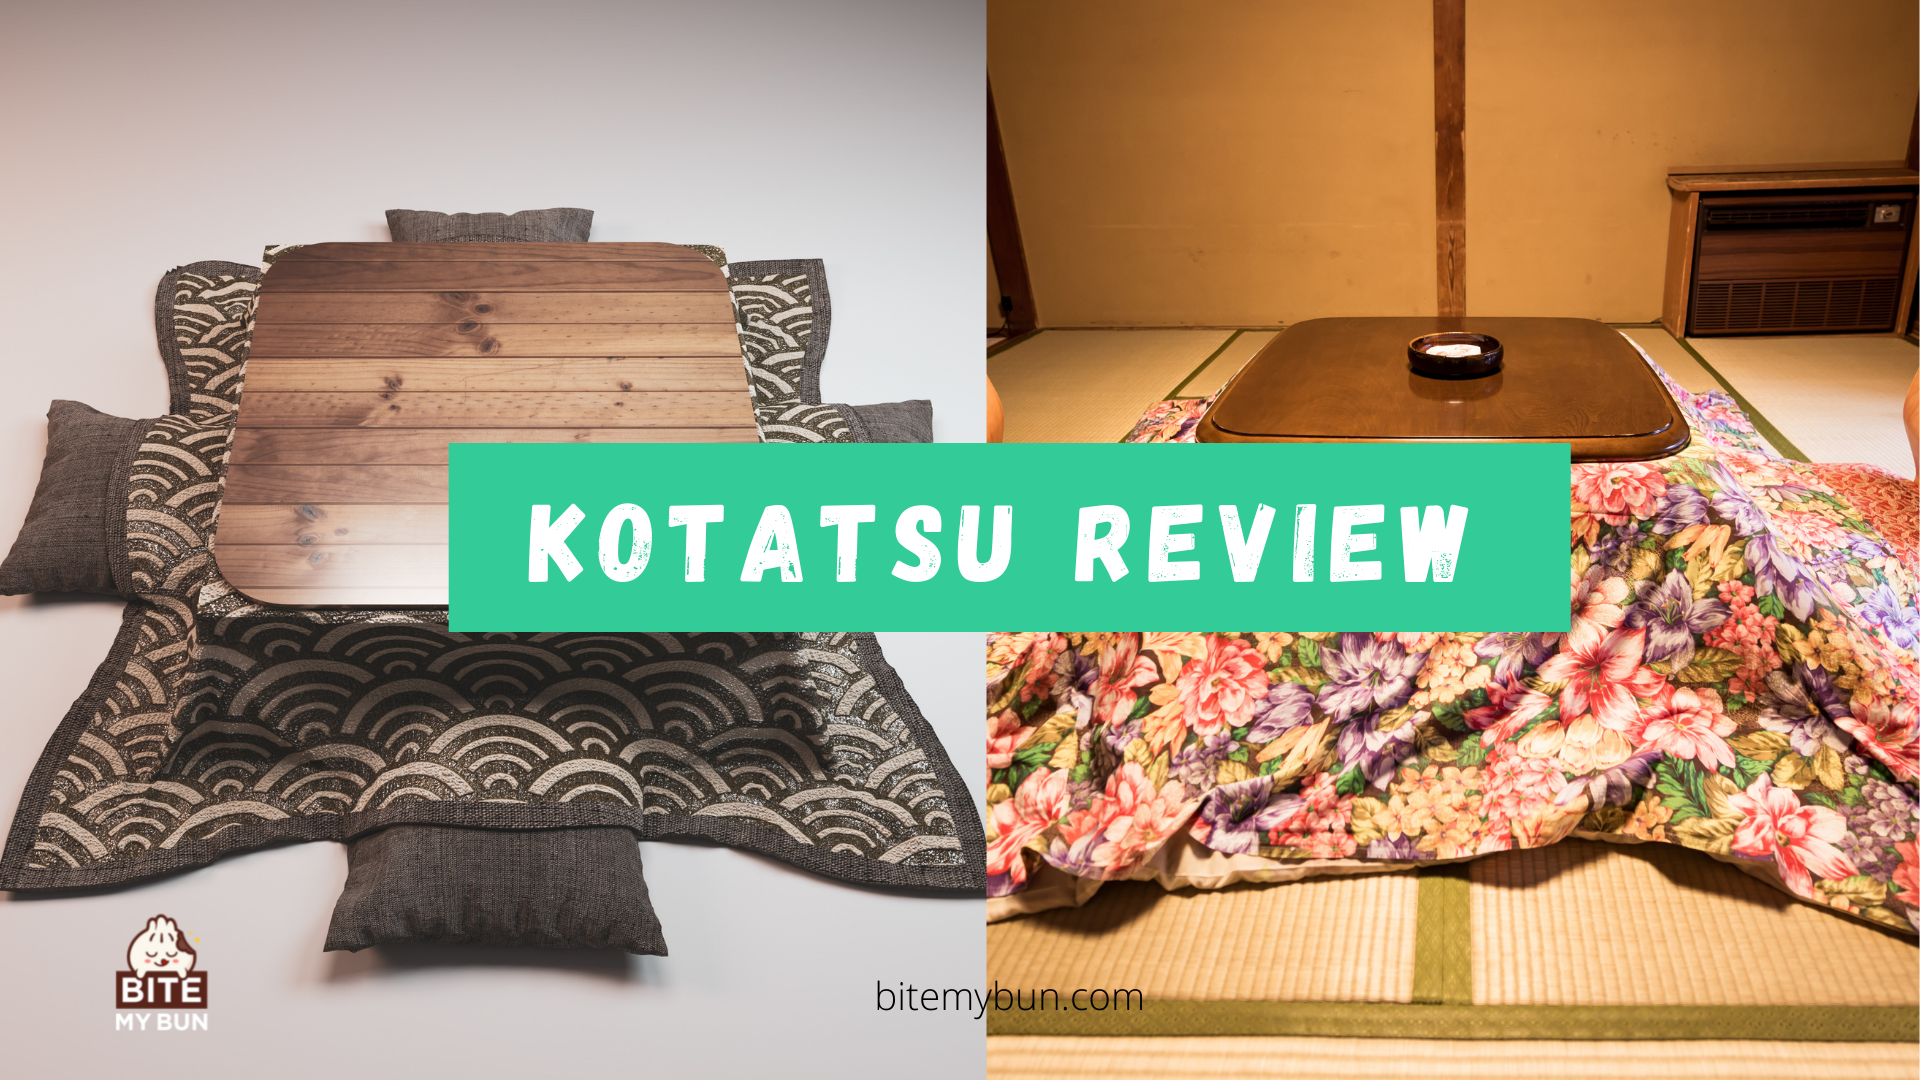 Kotatsu japansk bordsvärmare recension | De bästa traditionella och bekväma alternativen